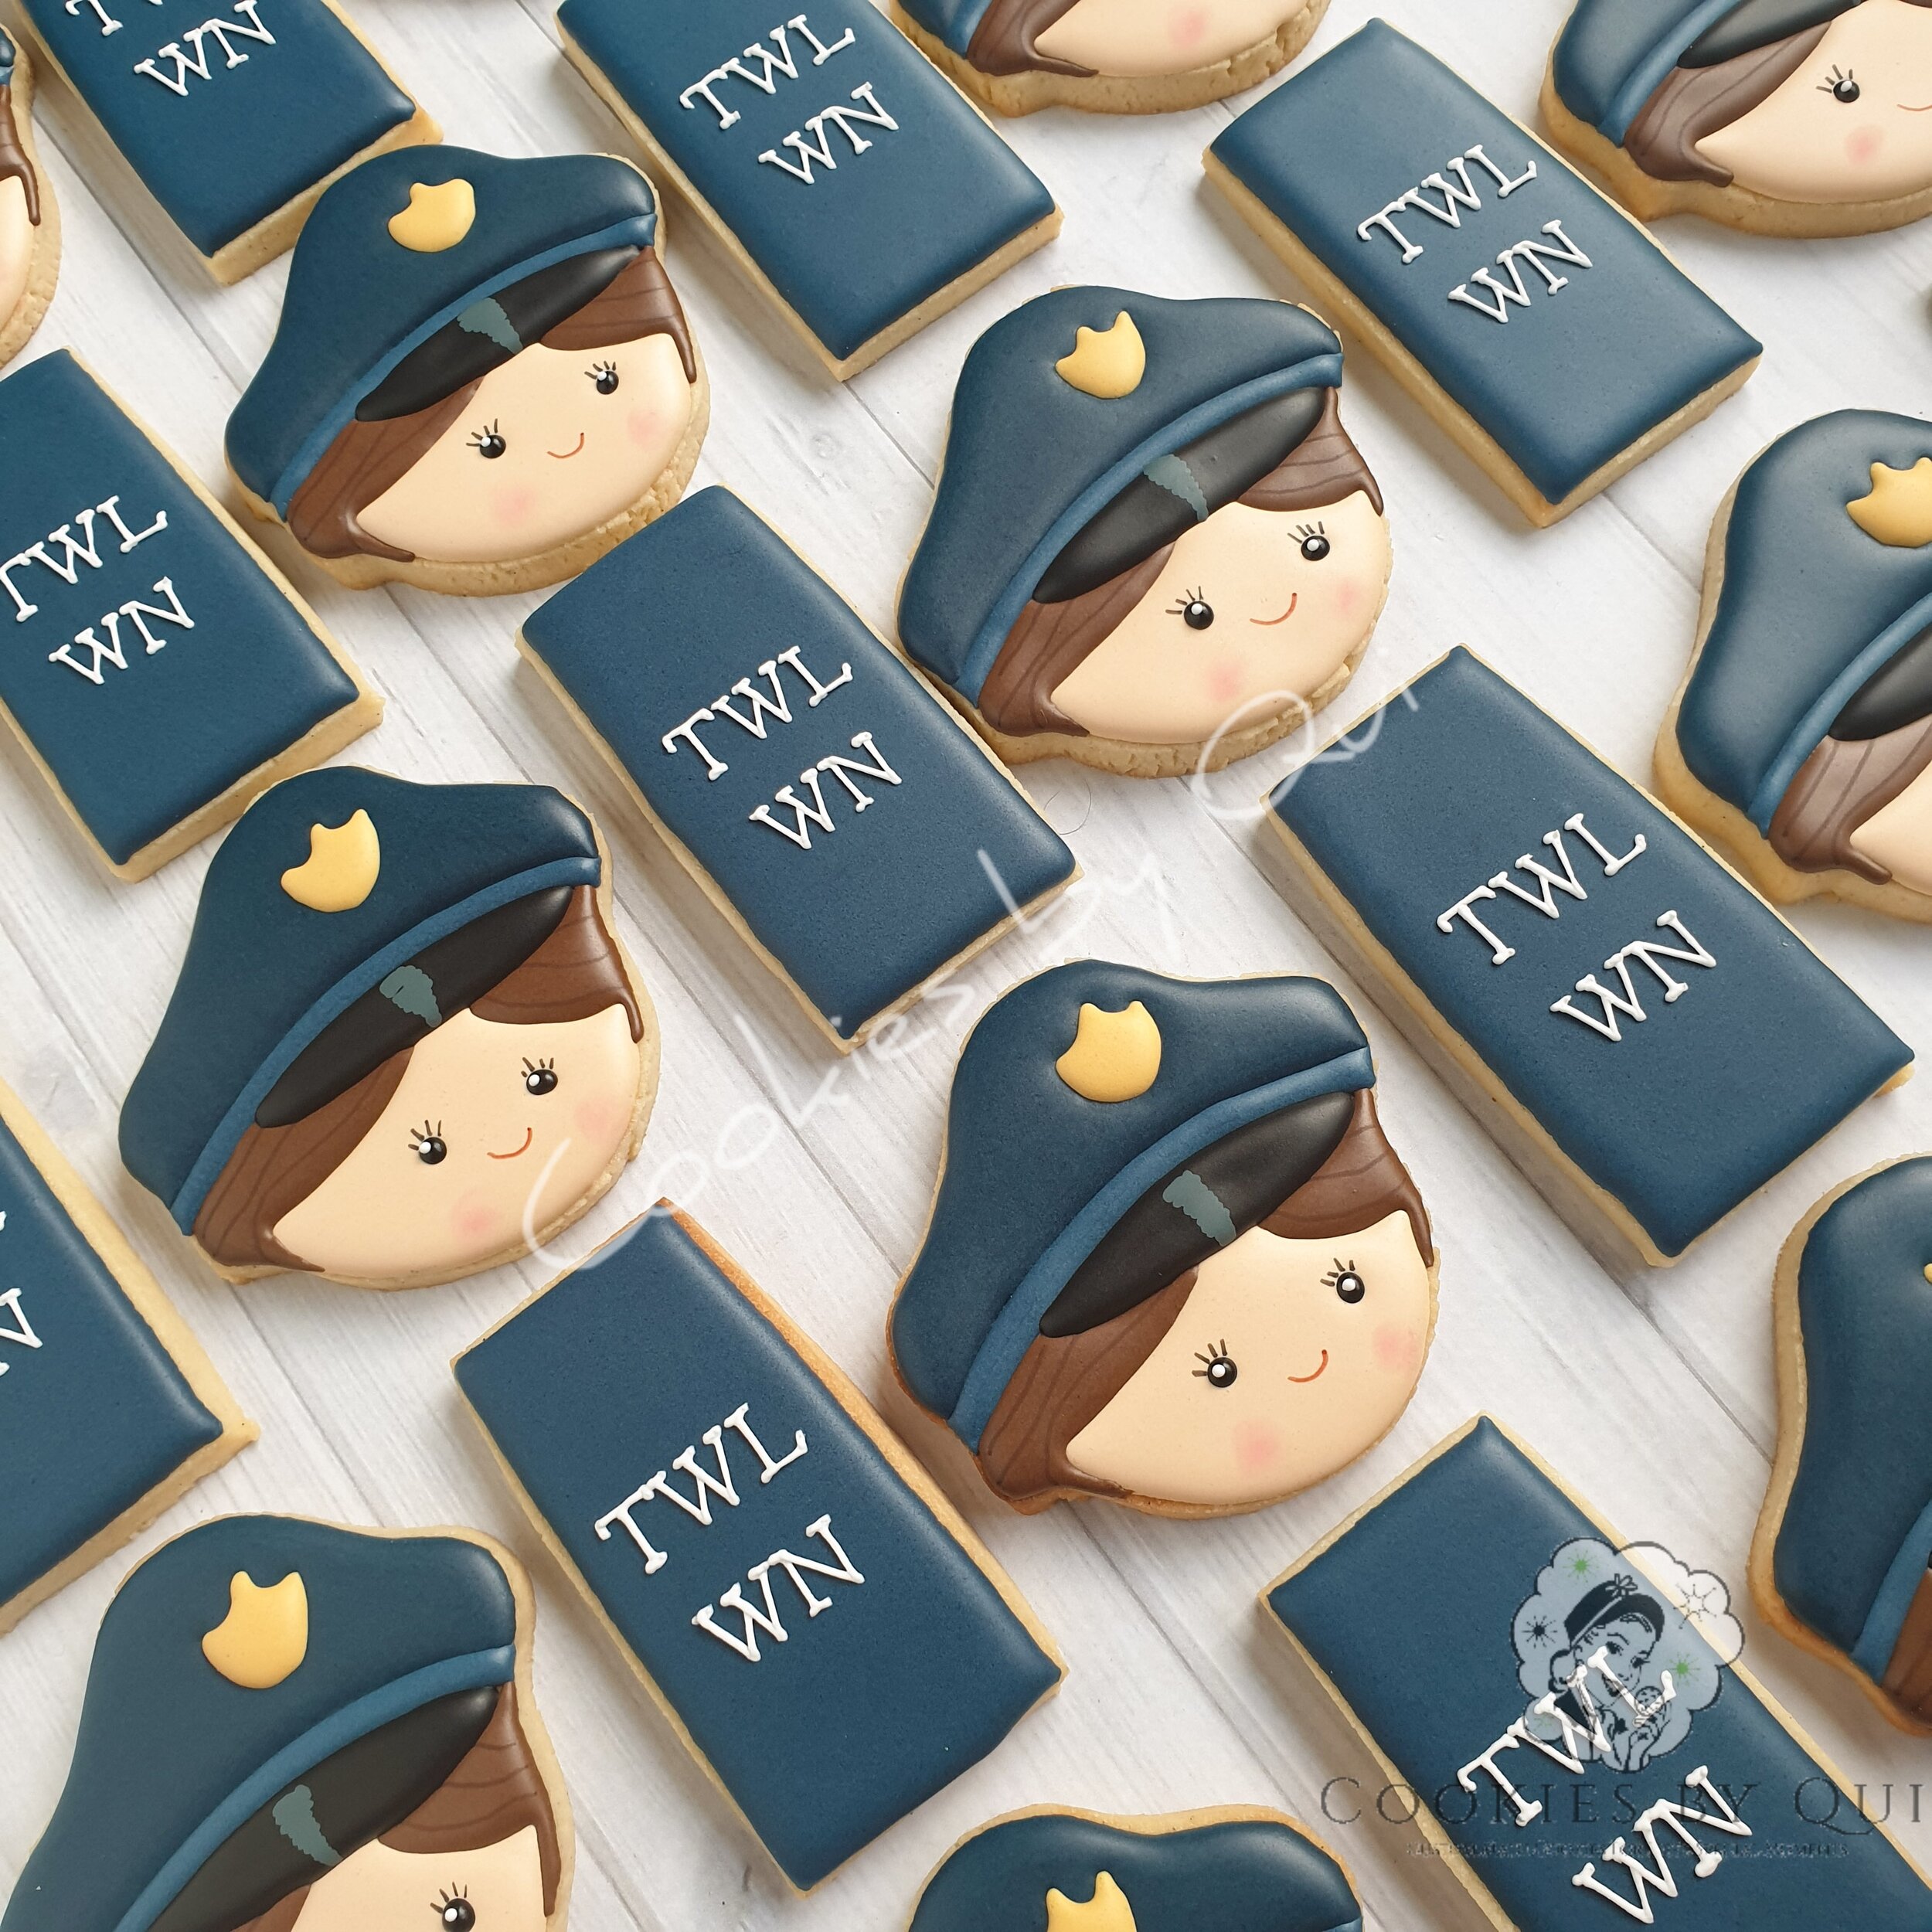 Police Woman Cookies - Cookies by Qui Geelong.jpg